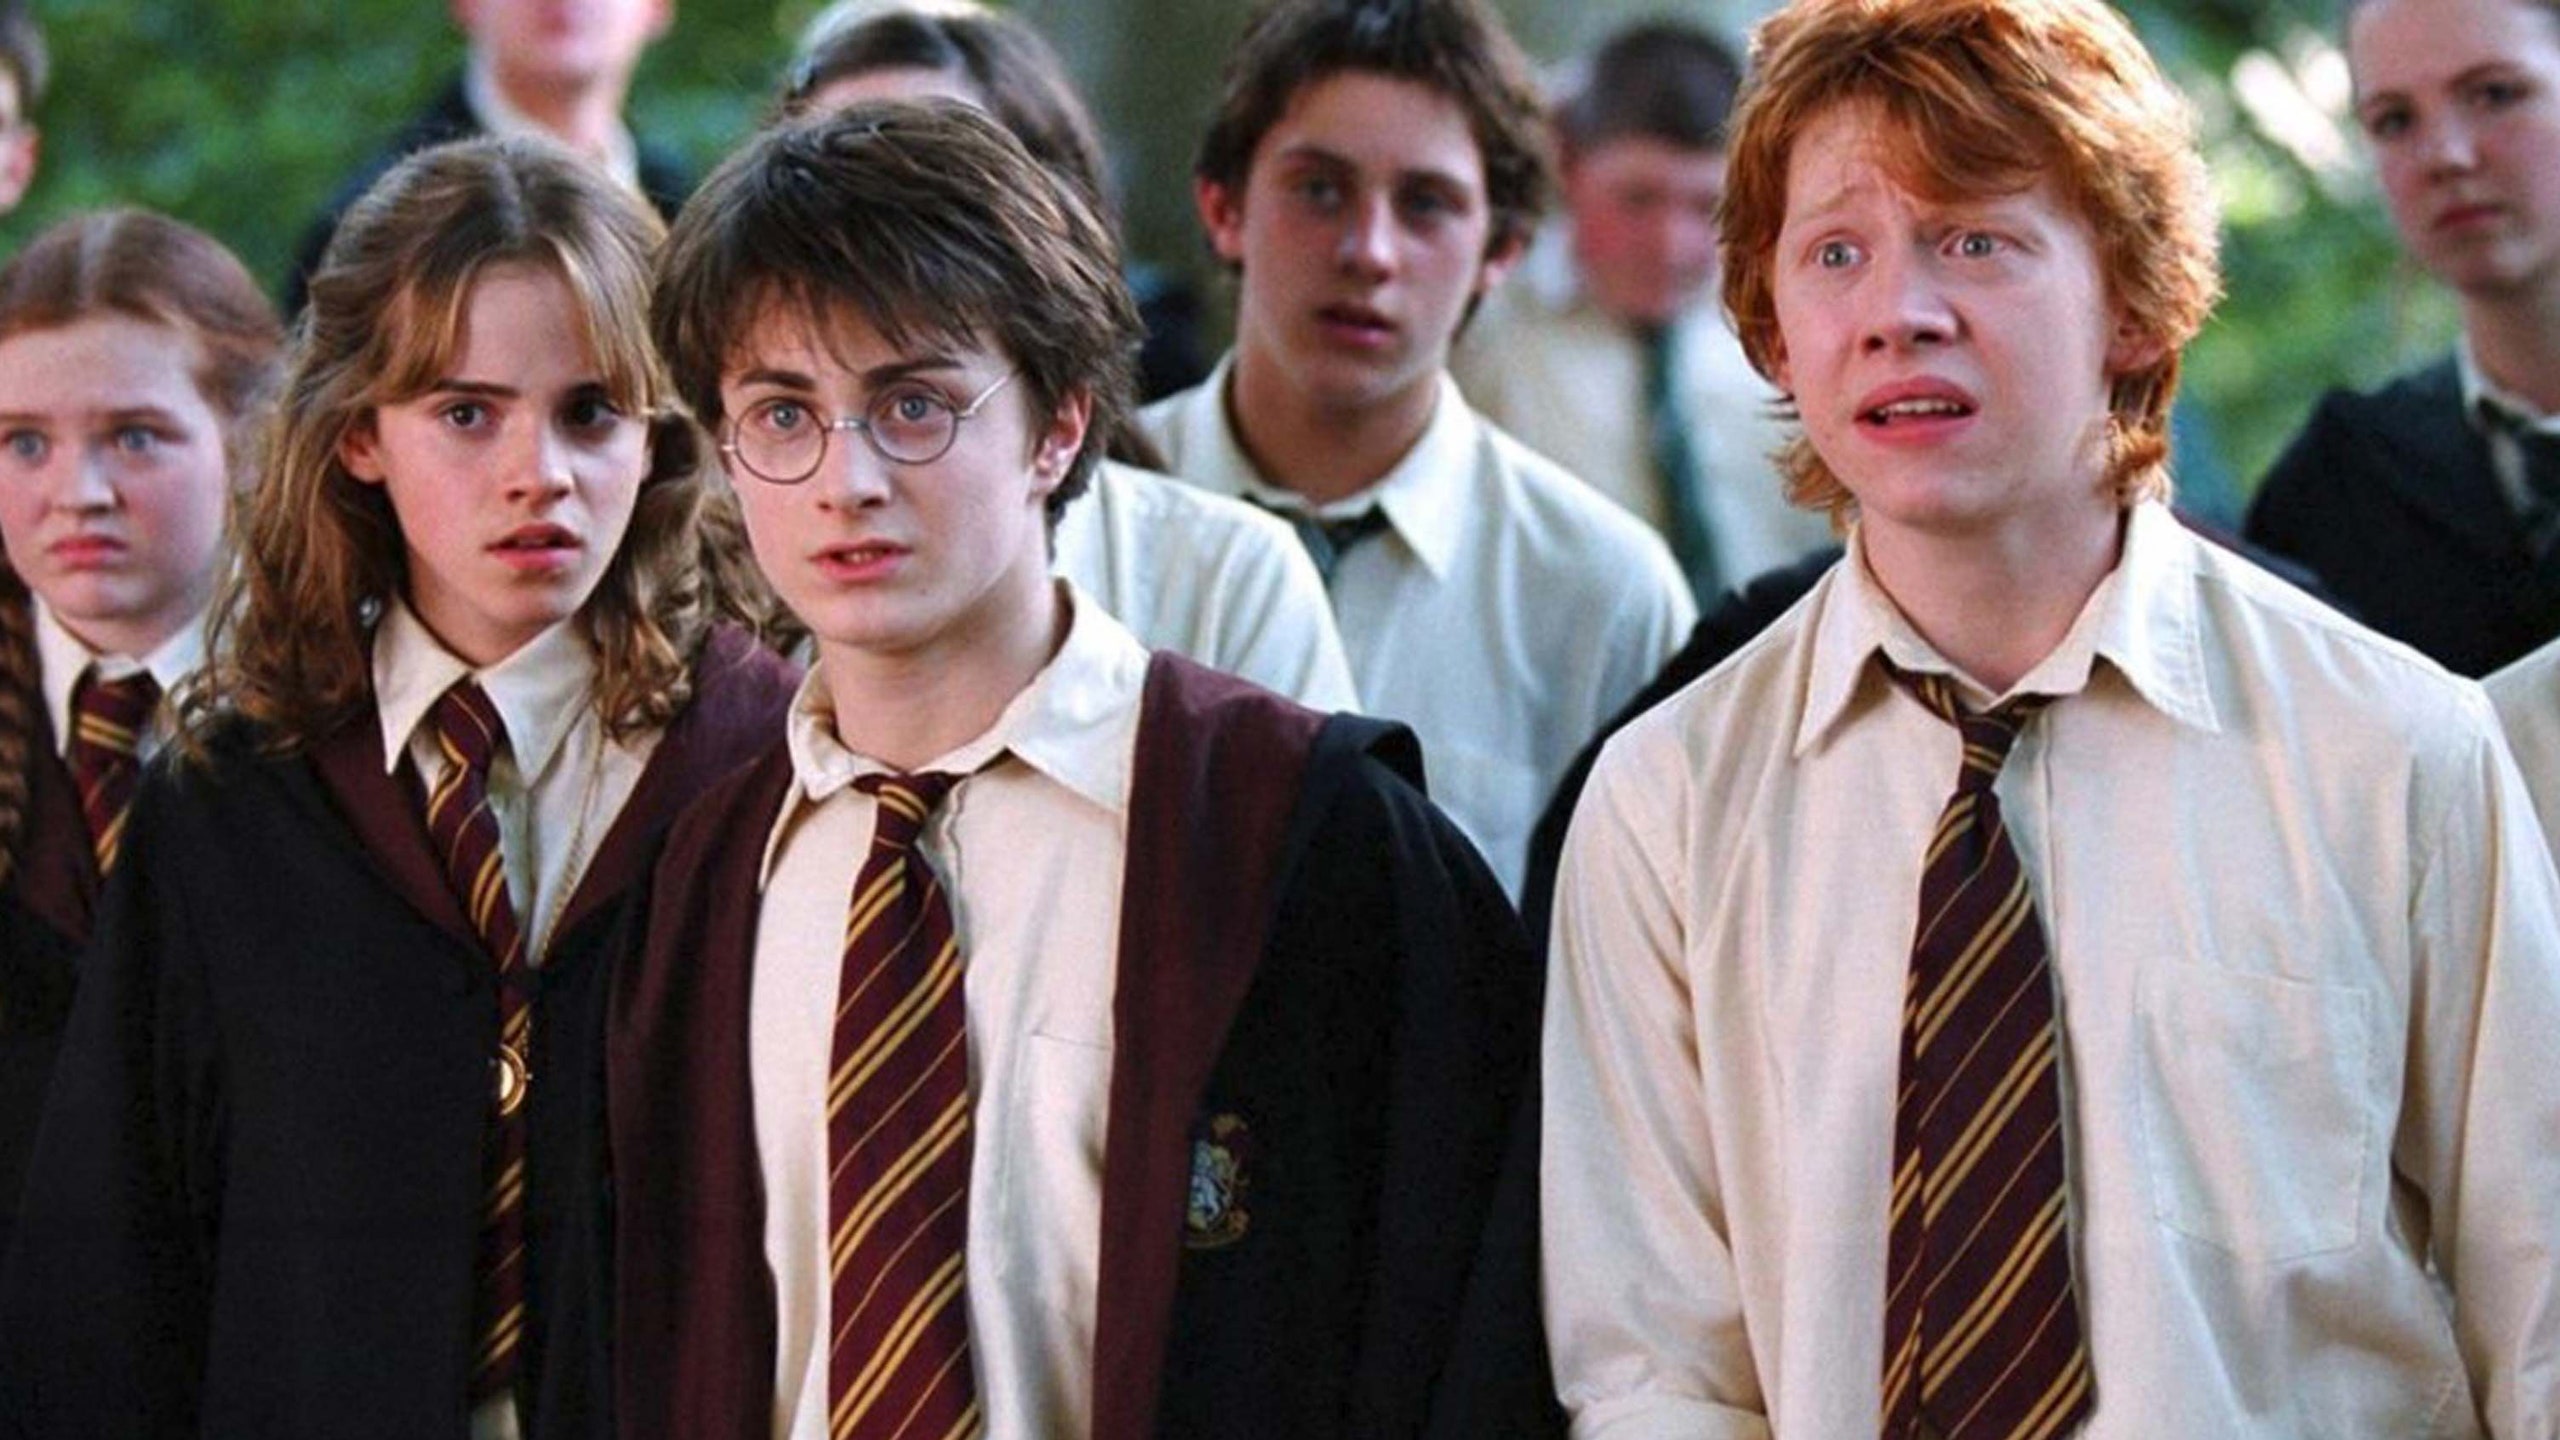 Harry Potter es una de las sagas de lectura más famosas entre los jóvenes / GQ España 